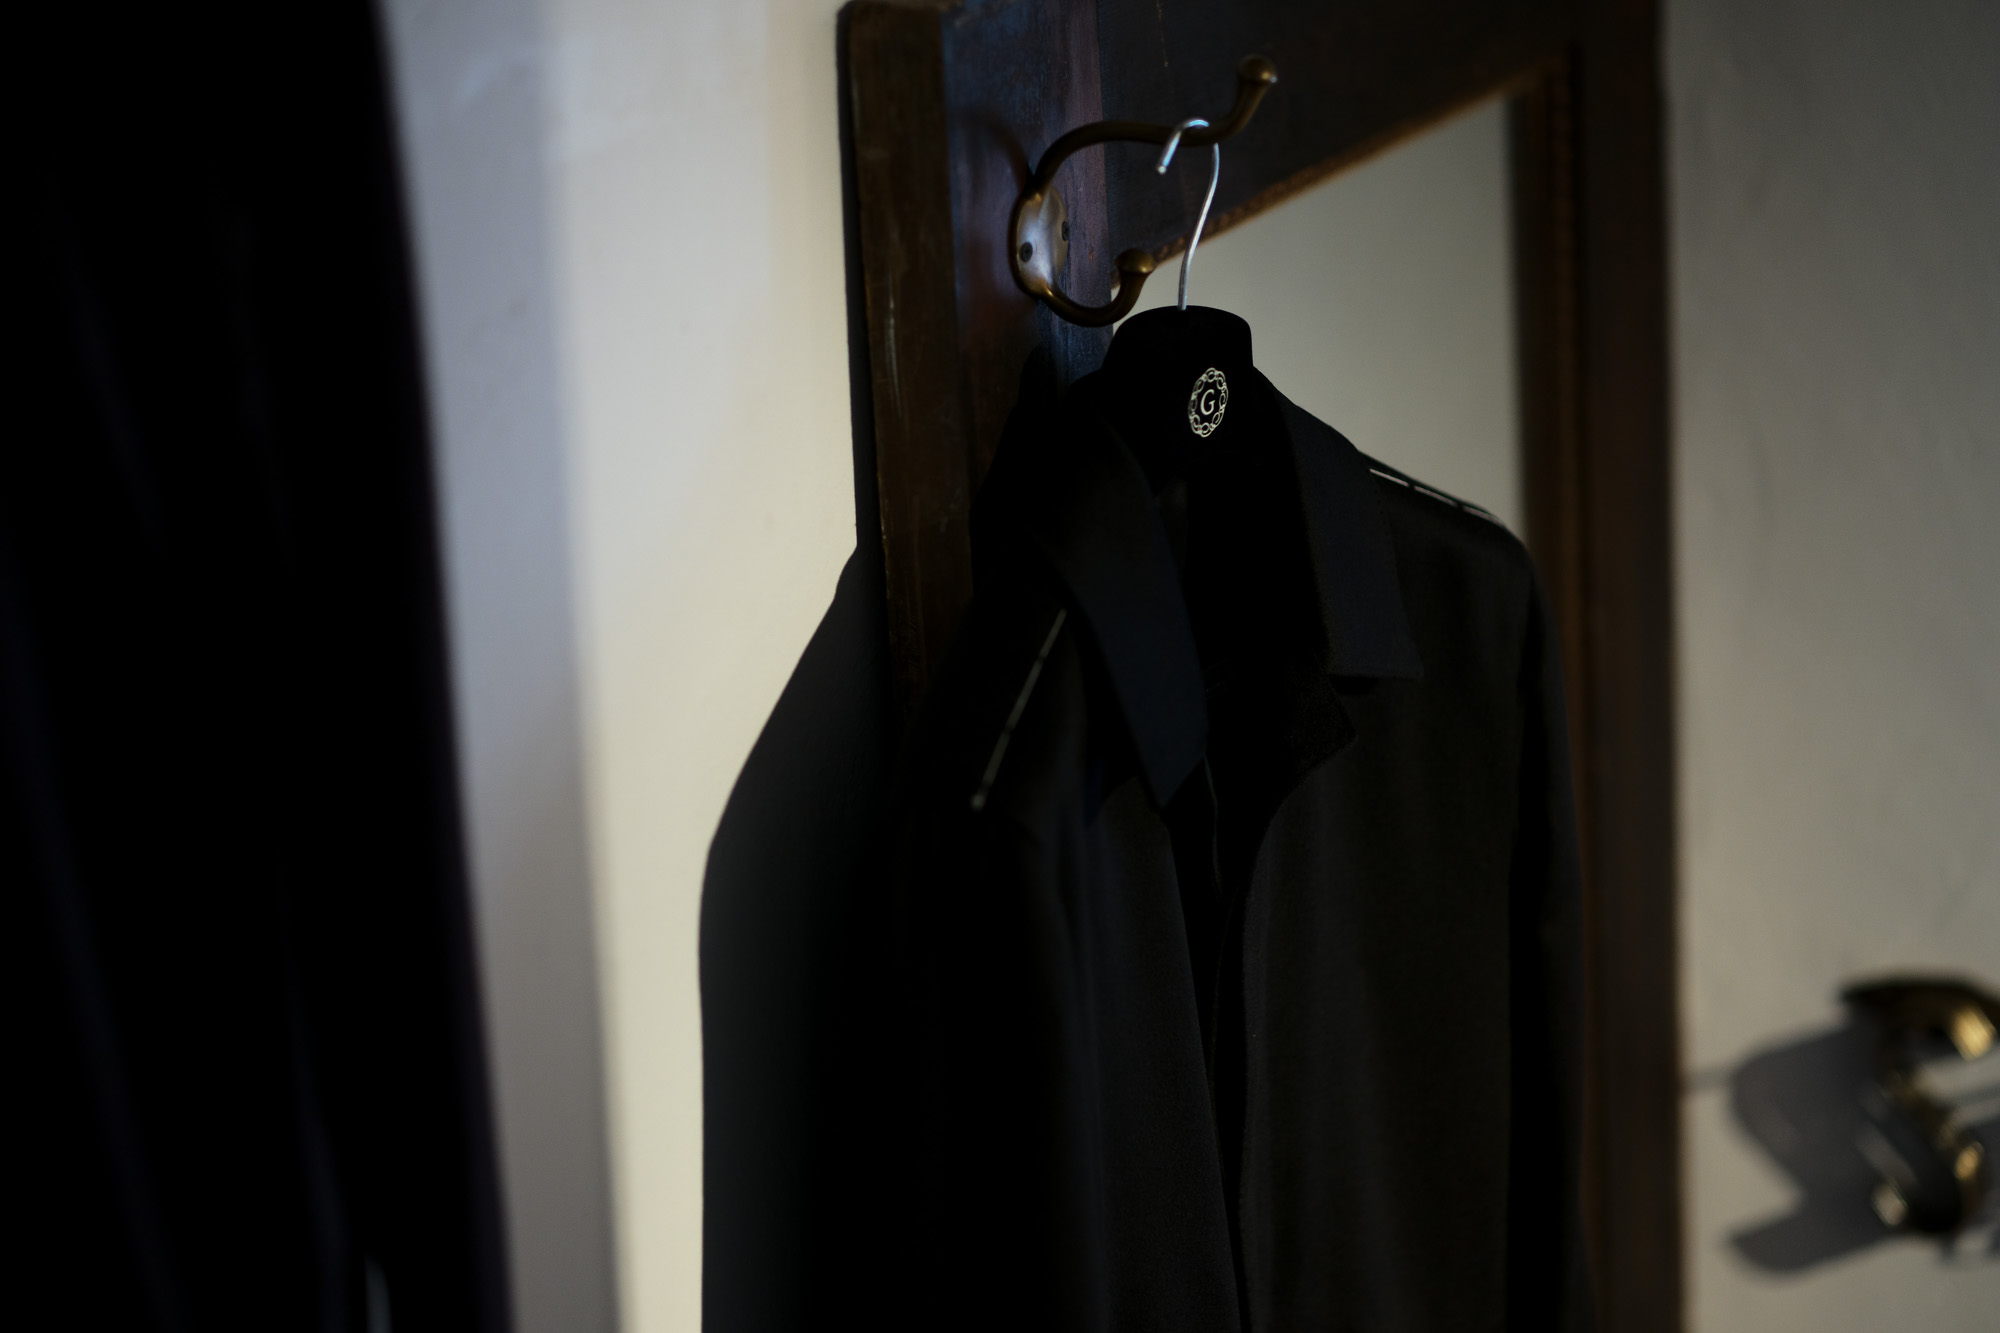 LUCA GRASSIA (ルカ グラシア) Belted coat (ベルテッド コート) カシミアフラノ カシミア バルカラー ベルテッド コート BLACK (ブラック)  Made in italy (イタリア製) 2020 秋冬 【ご予約受付中】愛知 名古屋 altoediritto アルトエデリット lucagrassia カシミヤコート カシミアコート